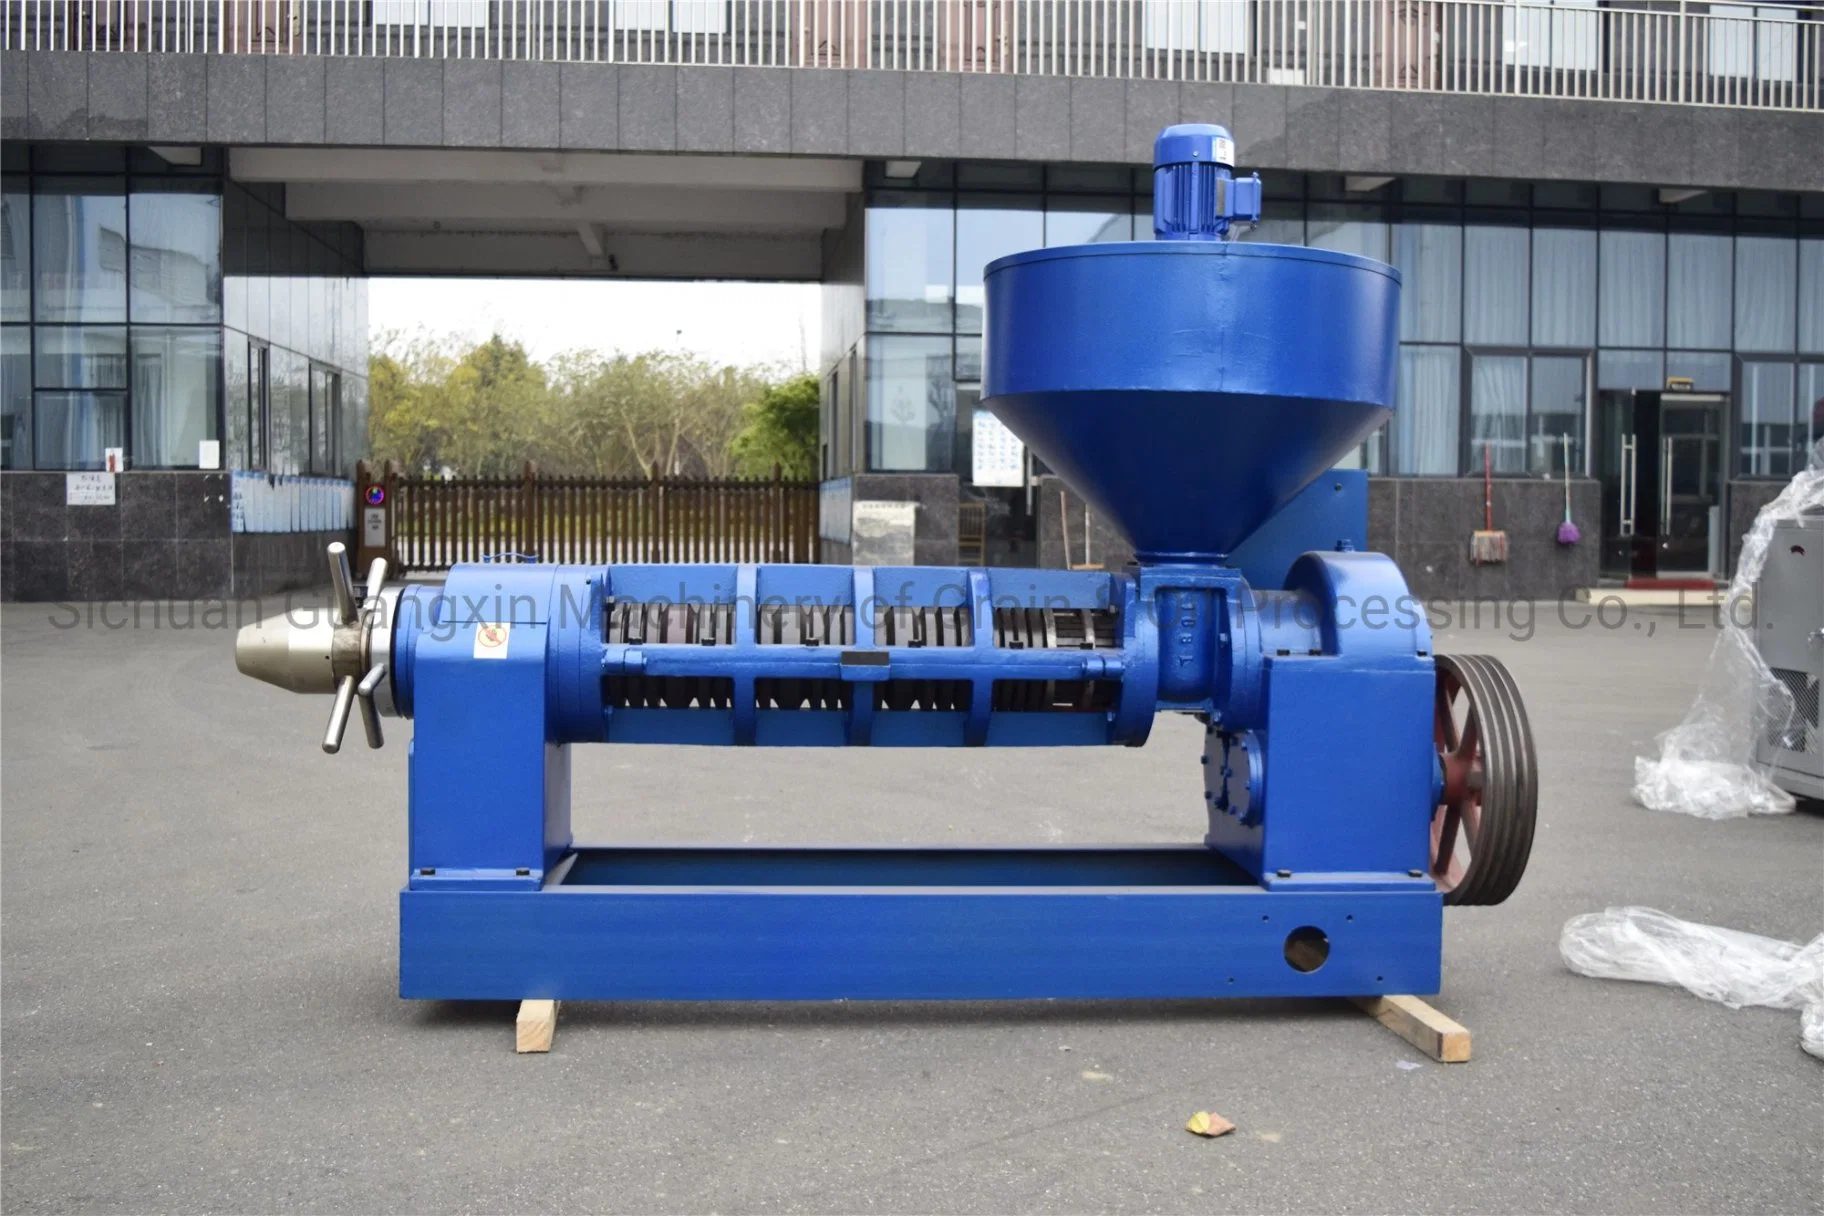 Le plus grand de coton Graines de tournesol Huile d'arachide Yzyx168 de la machine de traitement